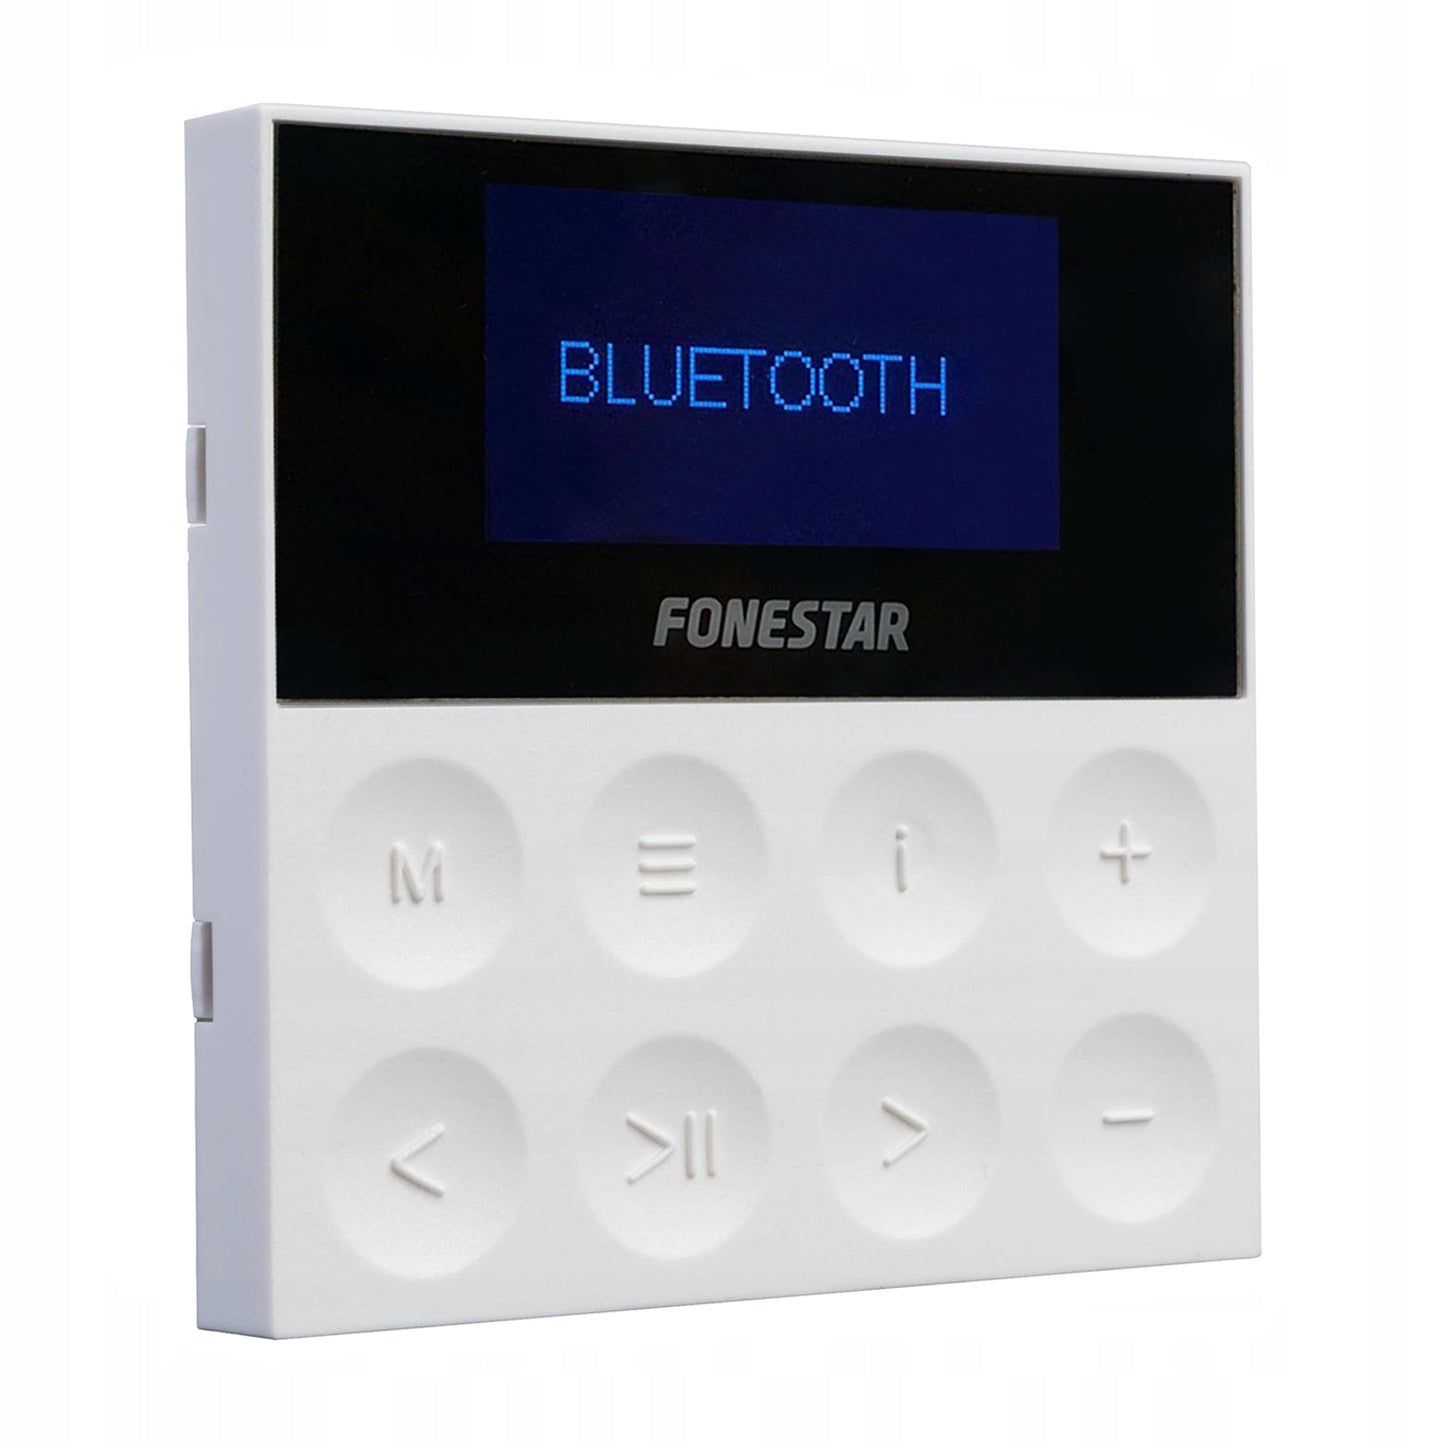 Fonestar KS-WALL Set sistema audio completo di 4 altoparlanti, un amplificatore player da parete, un telecomando per controllo remoto, Bluetooth, USB, MP3